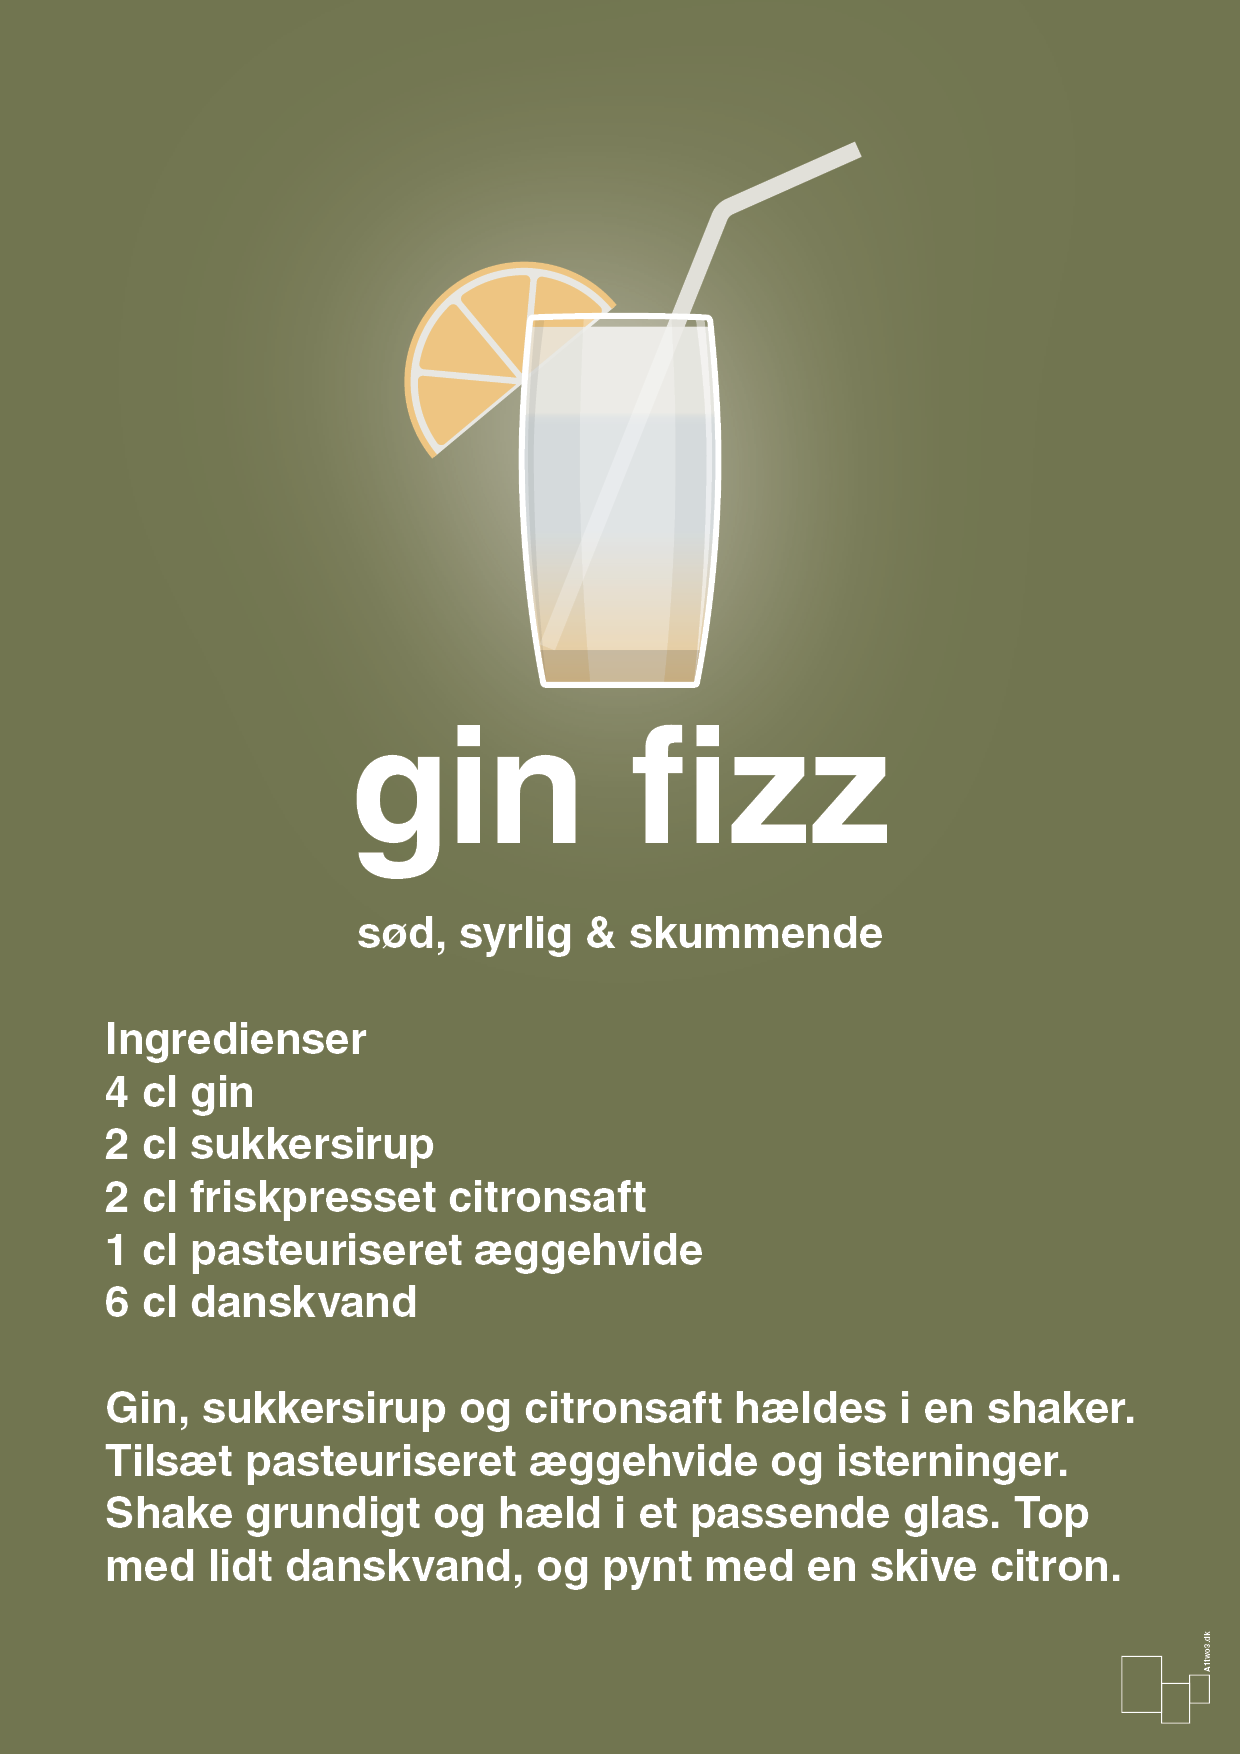 plakat: gin fizz